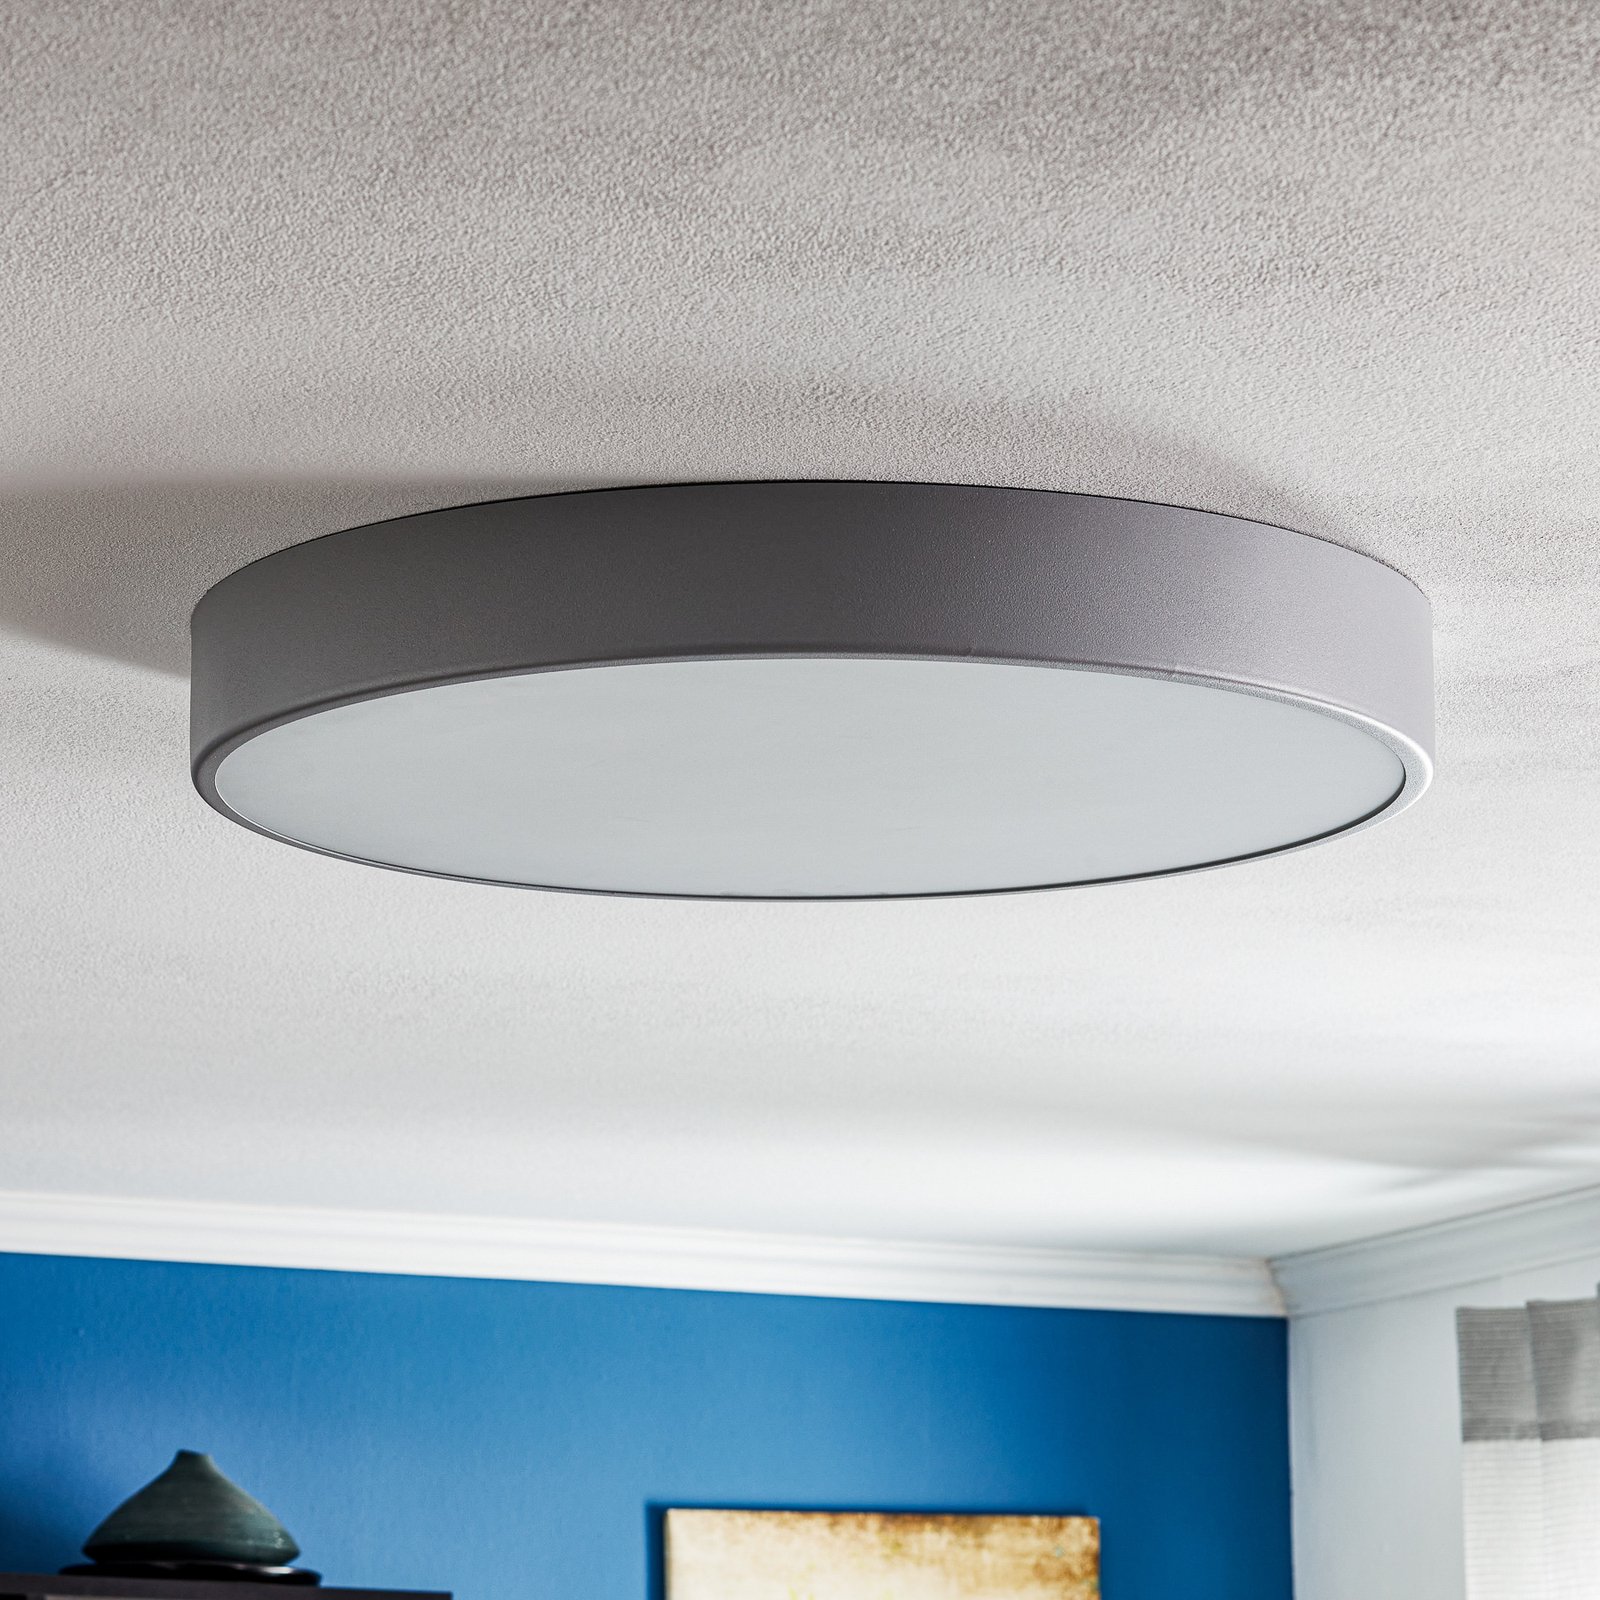 Cleo 600 ceiling light, sensor, Ø 60 cm grey